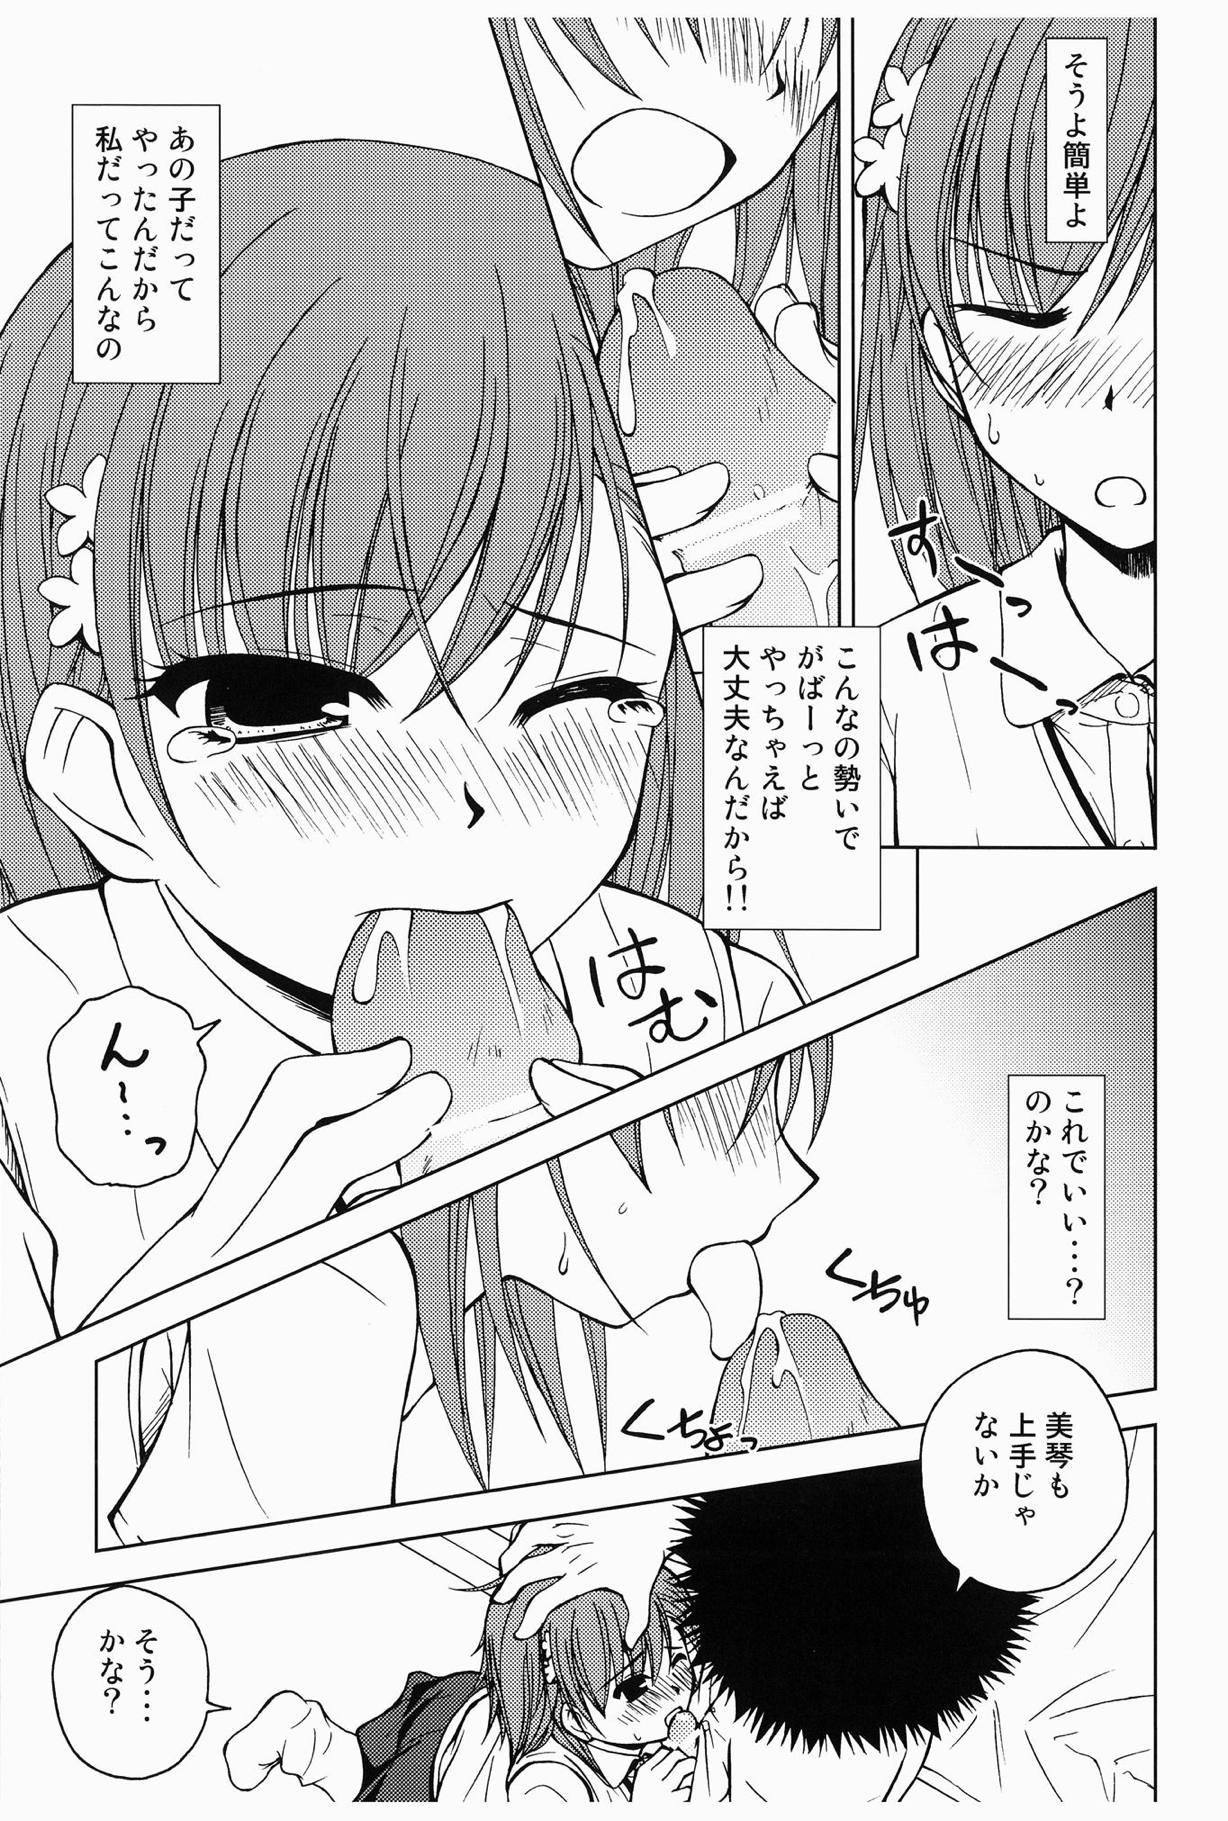 Girlongirl Touma to Misaka to Railgun - Toaru kagaku no railgun Cdmx - Page 6